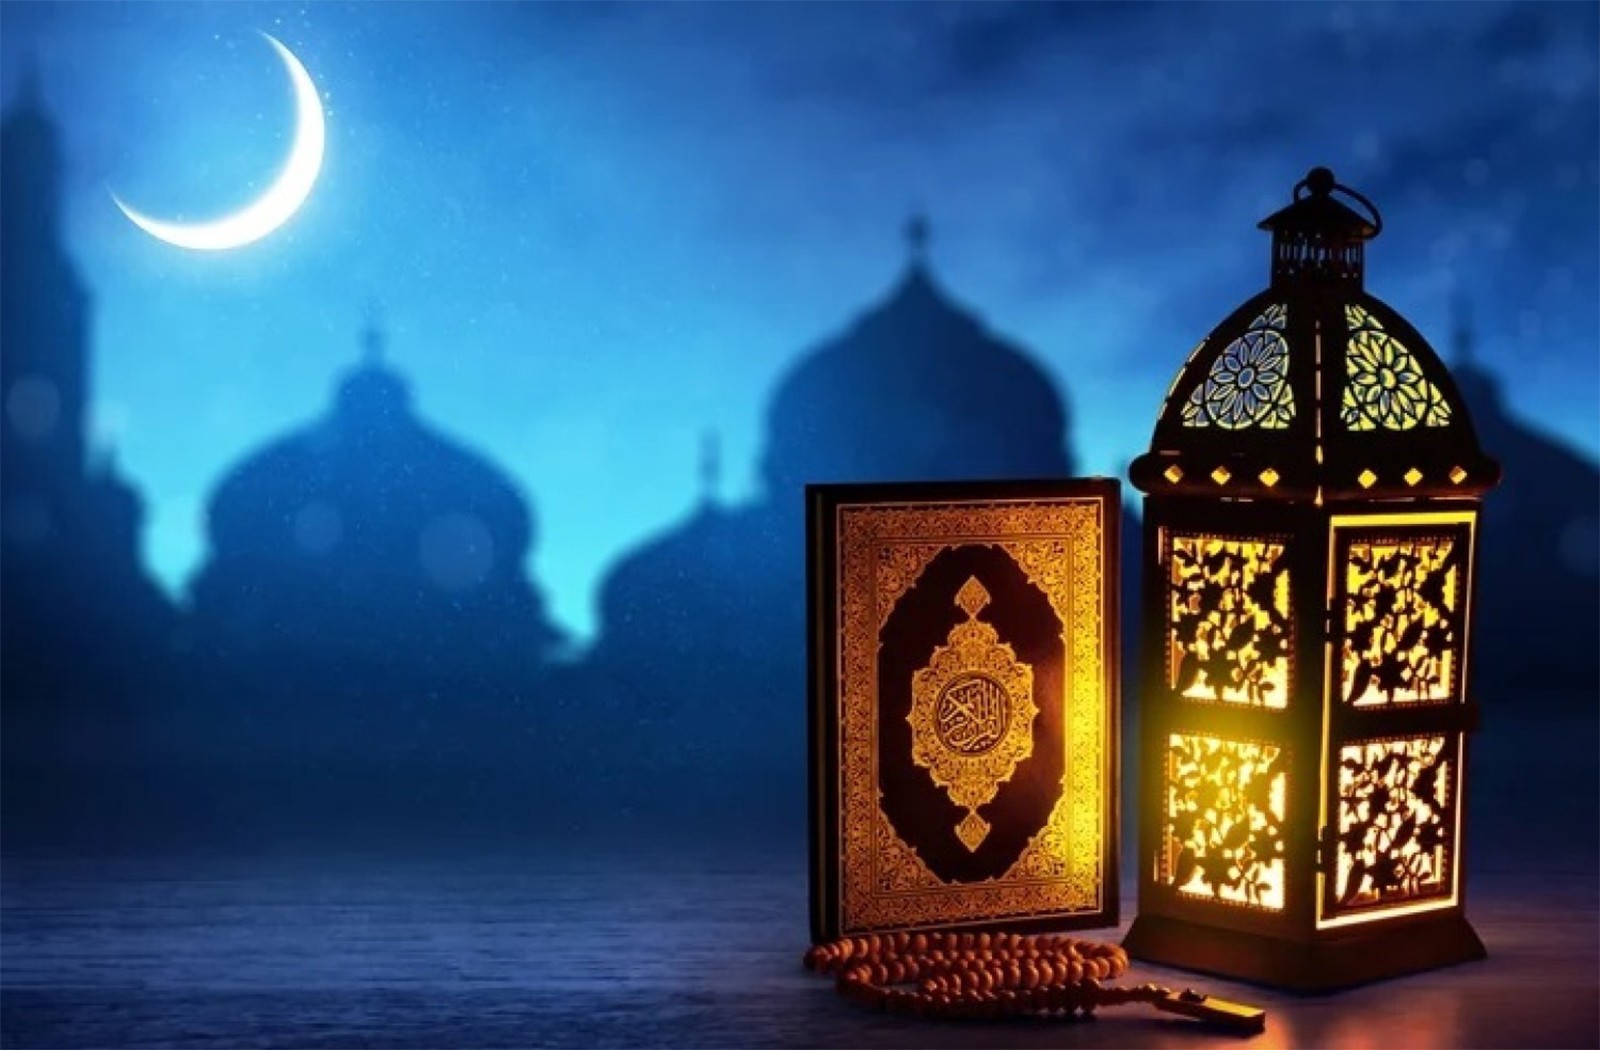 الآن تحميل صور تهنئة رمضان 2022 الجديدة واجمل عبارات تهنئة شهر رمضان المبارك Ramadan mubark